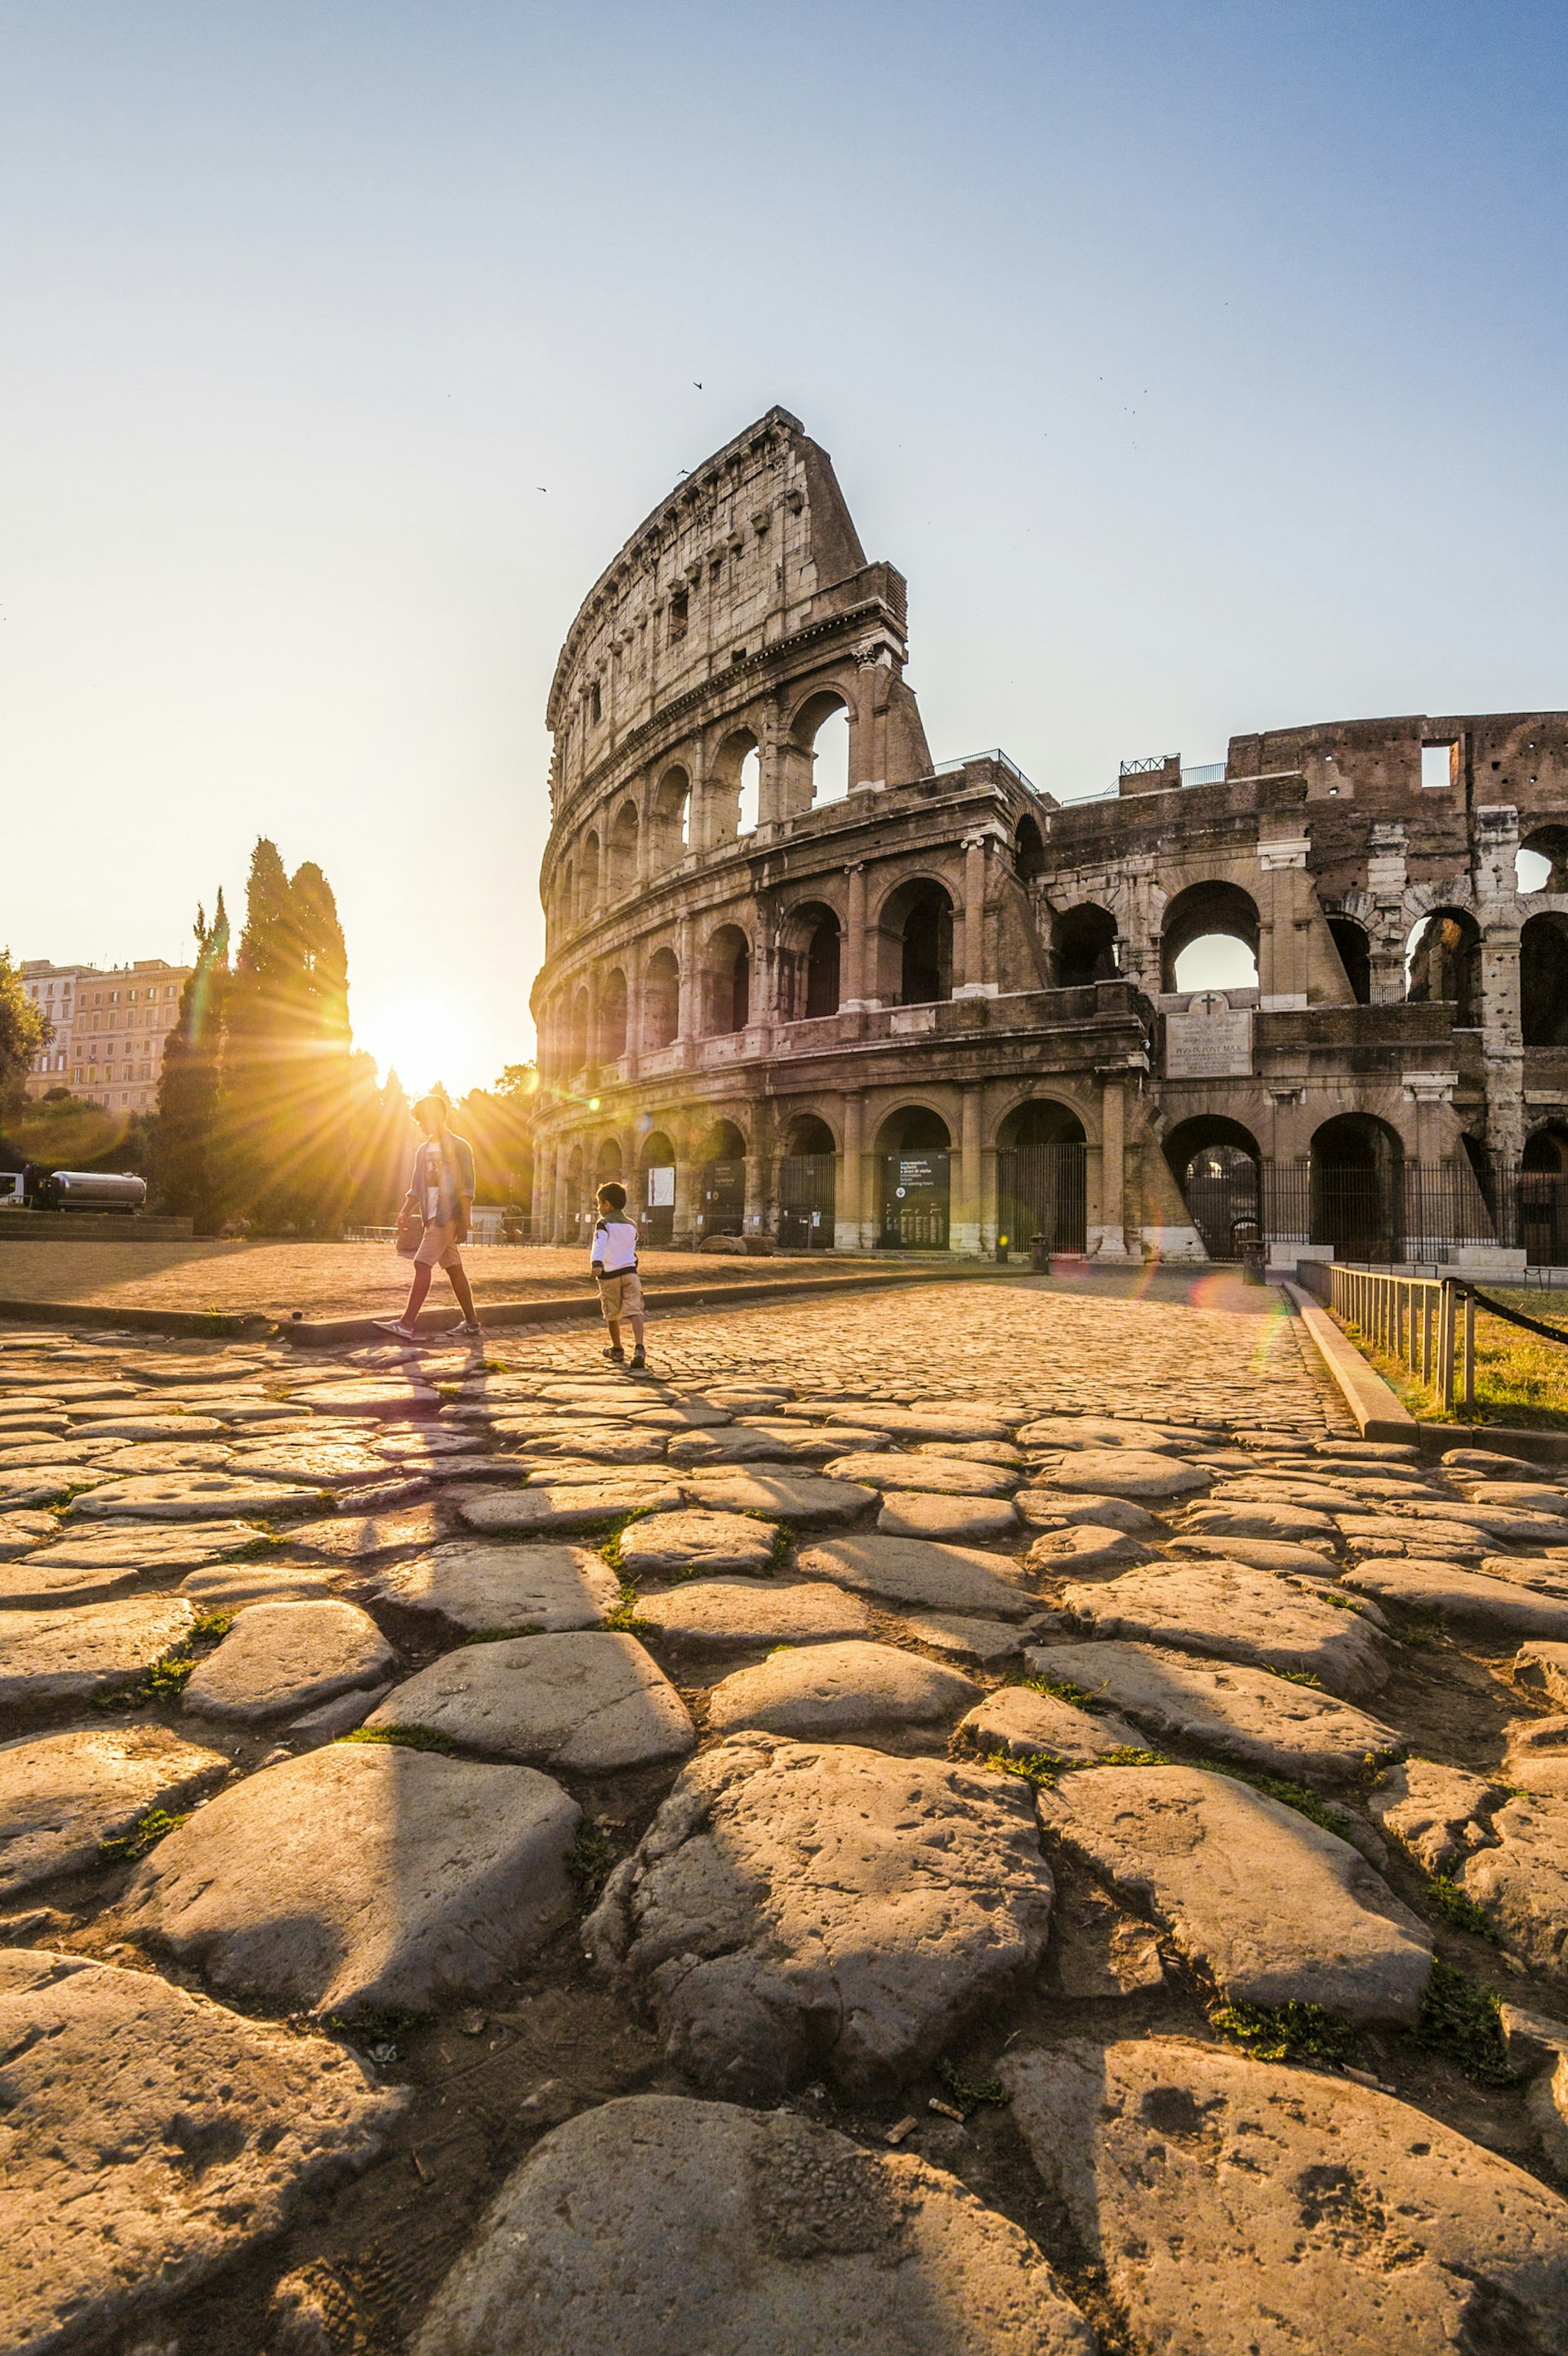 Features - Colosseum at sunrise. Rome, Lazio, Italy.